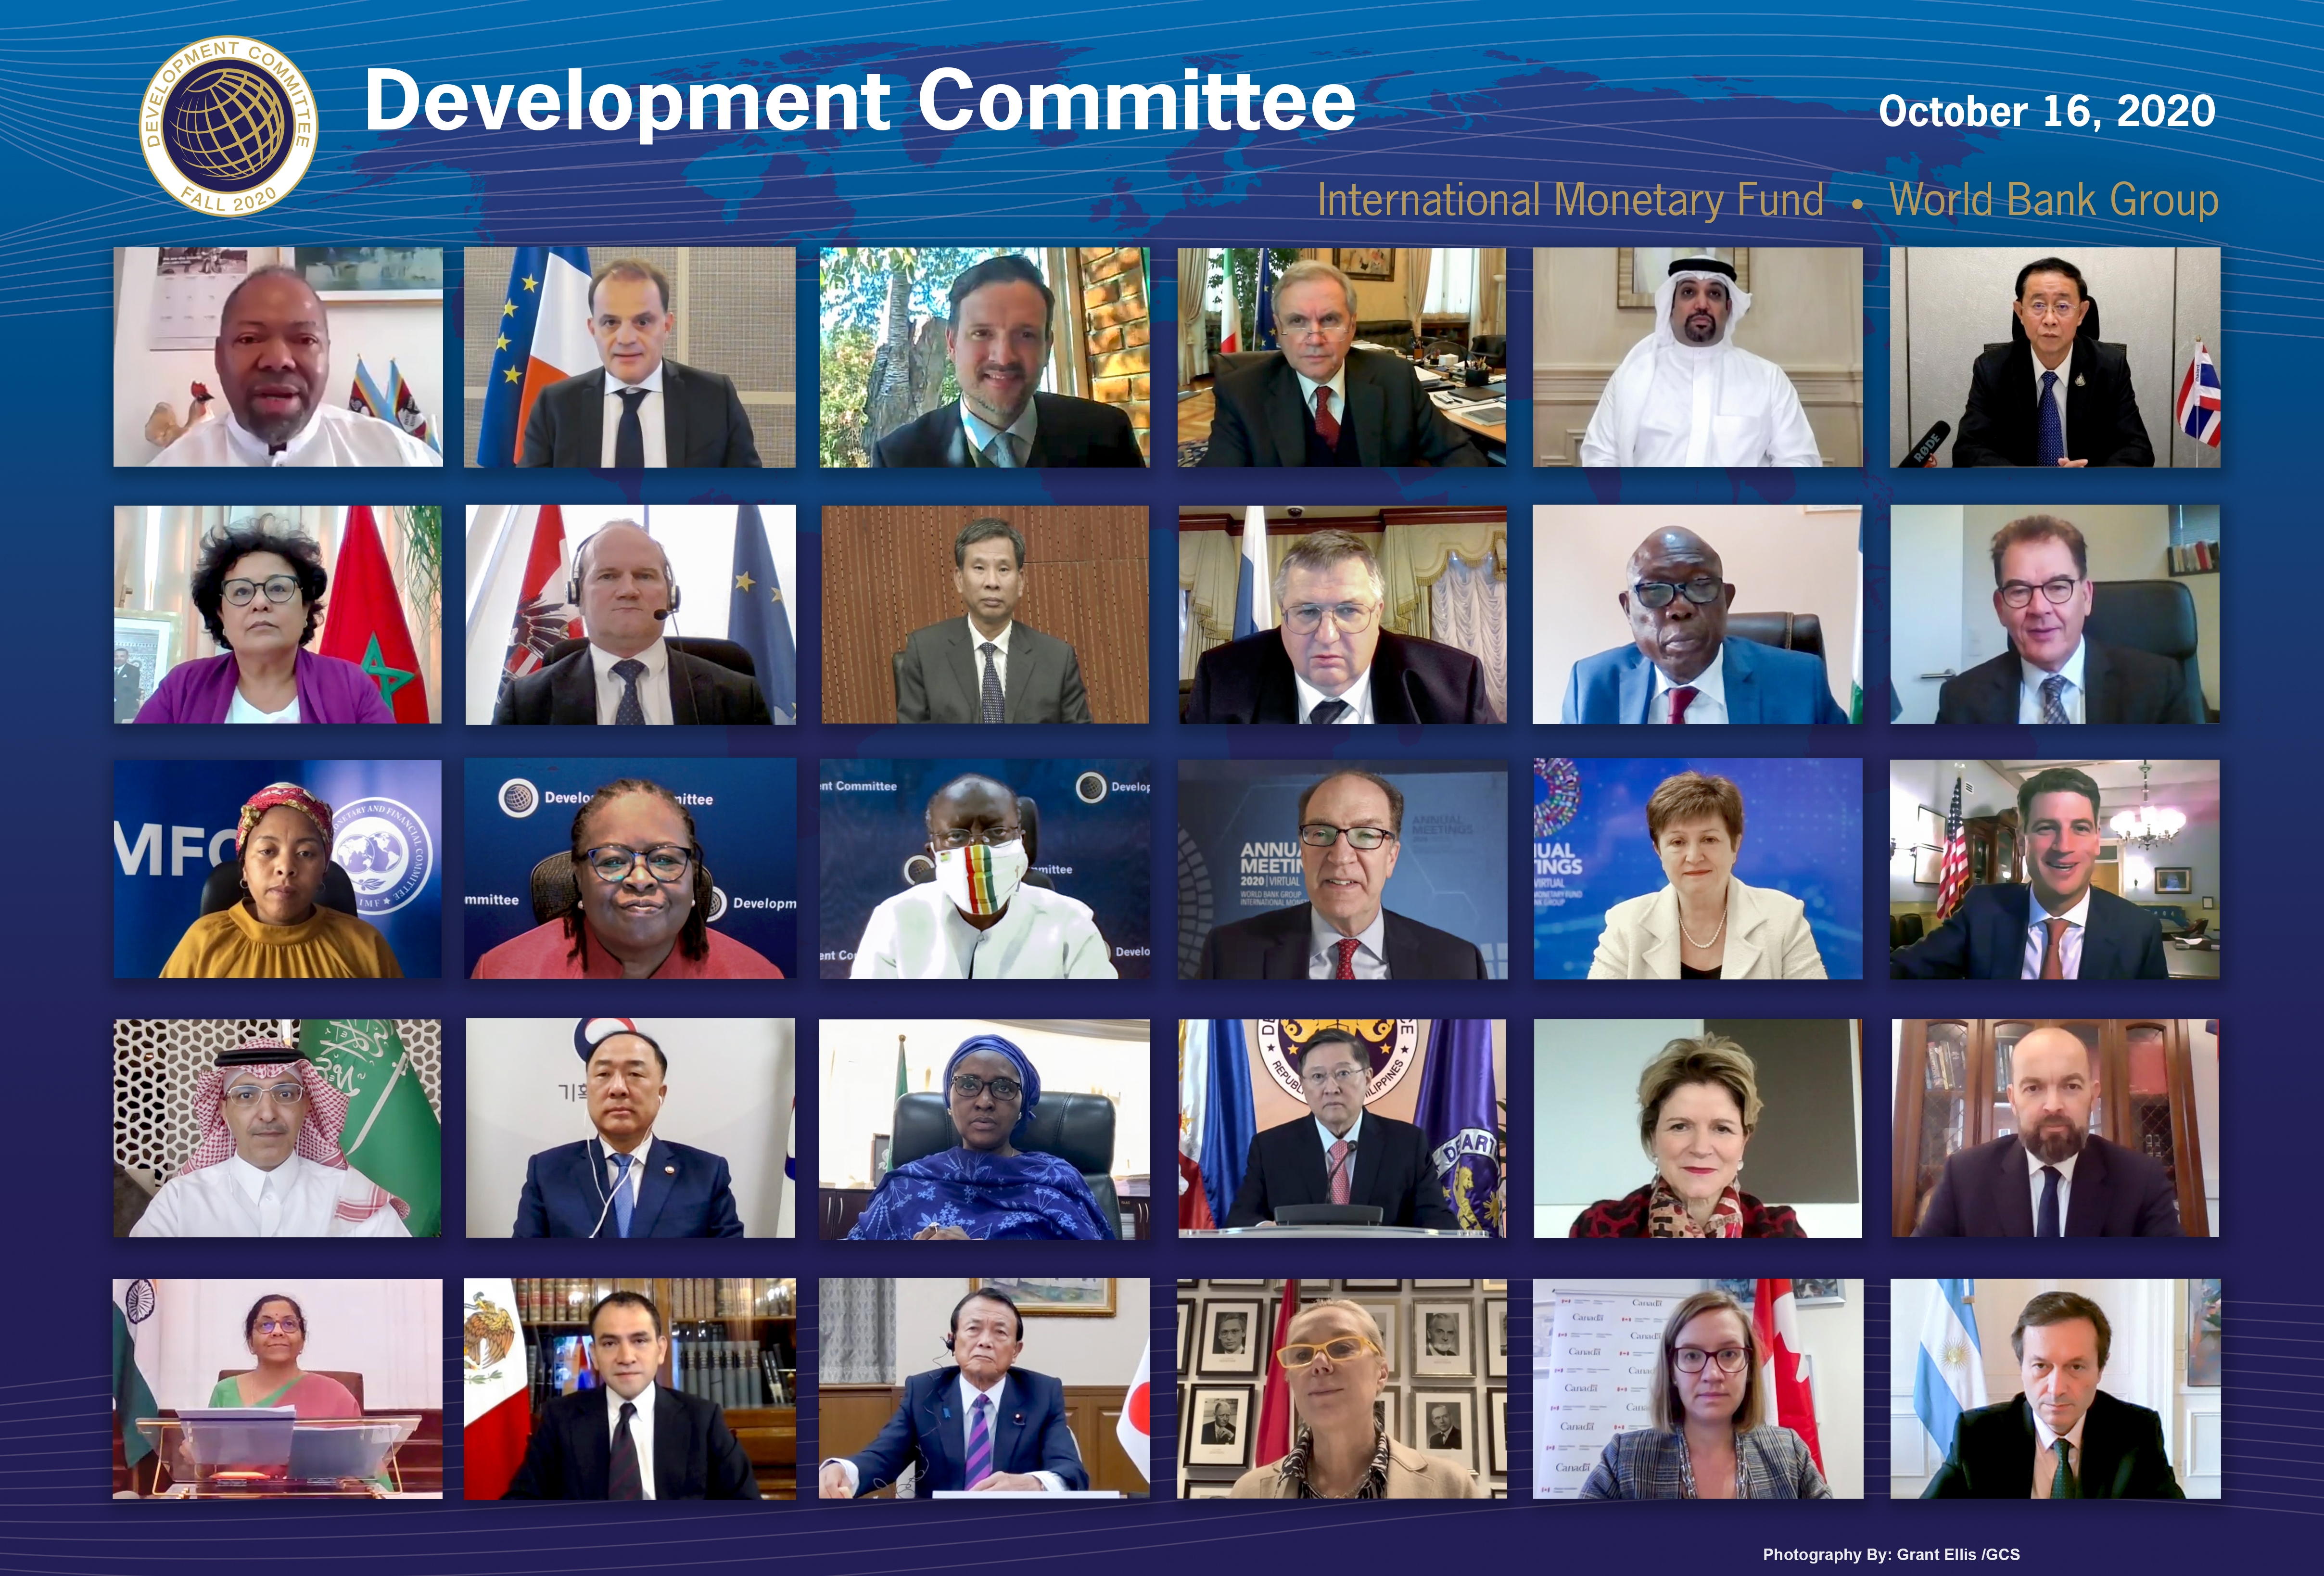 Development Committee. Annual Meetings 2020